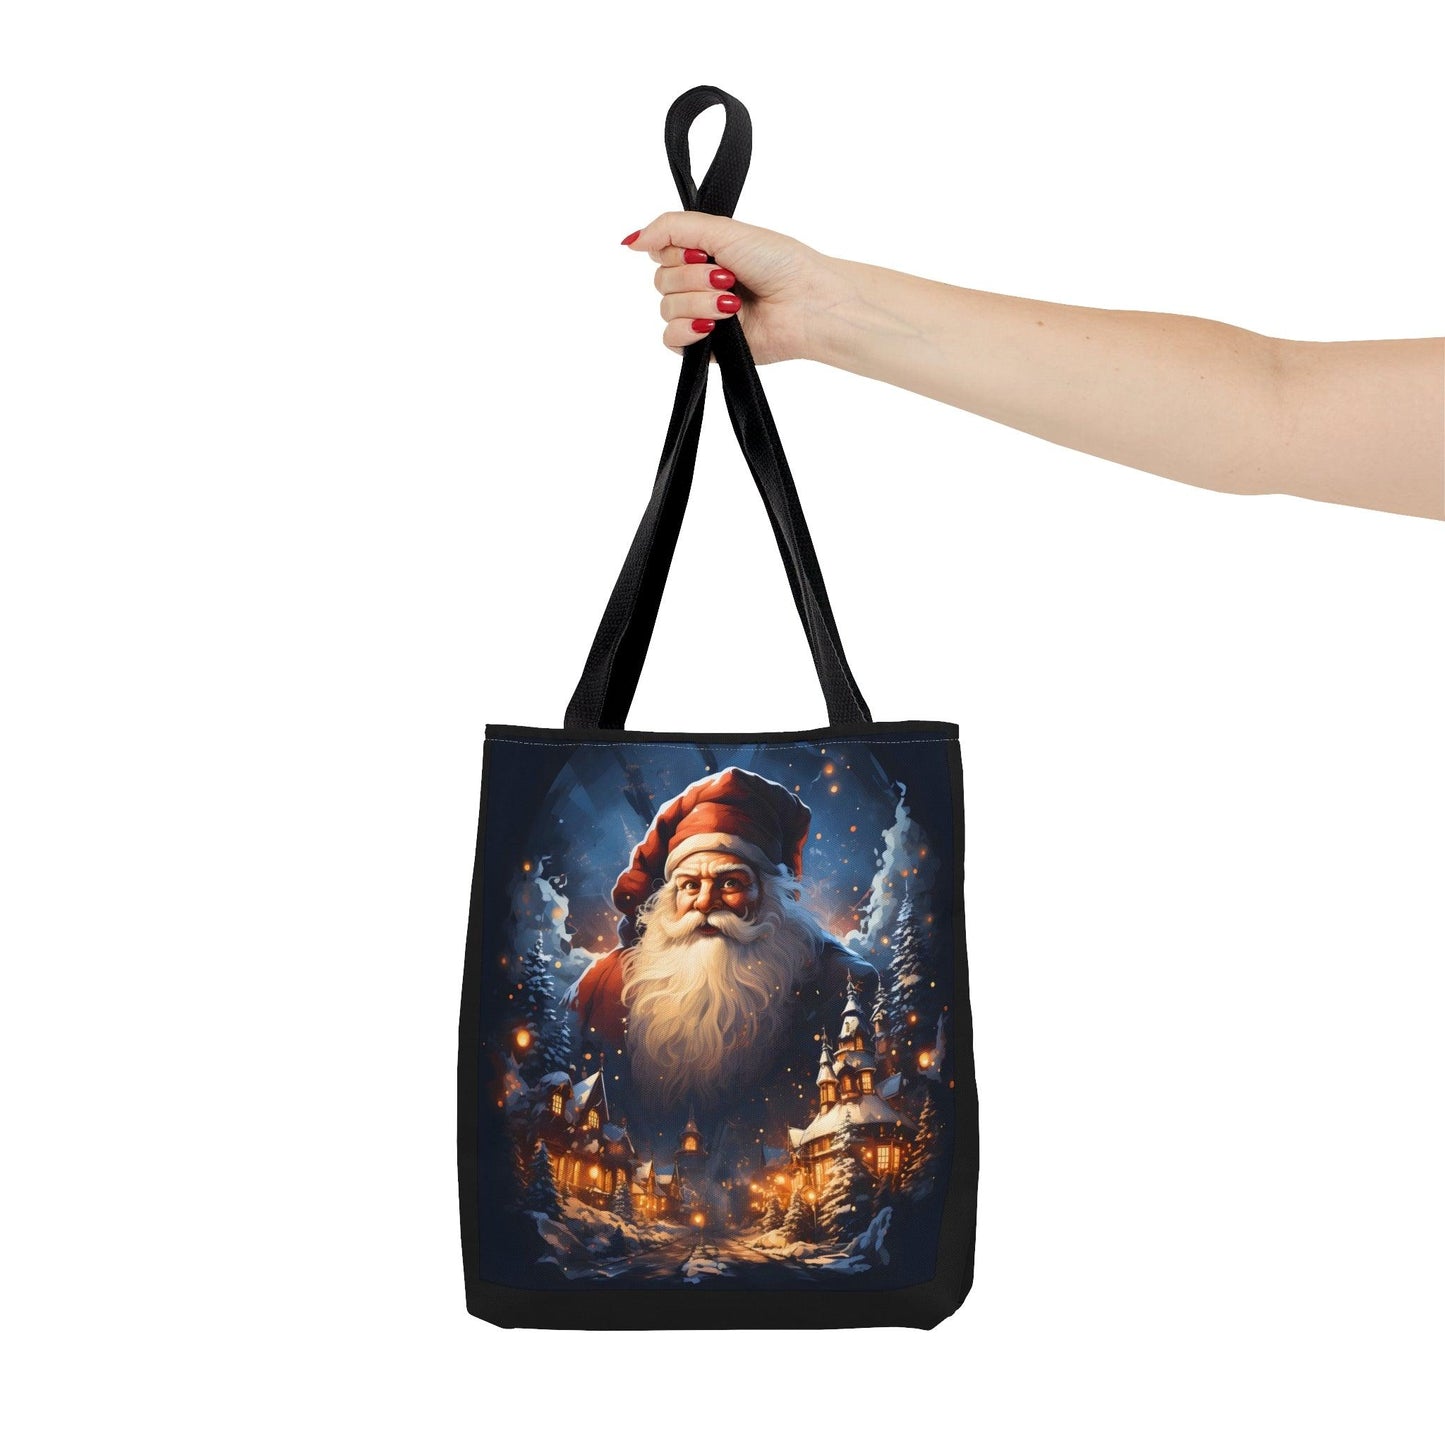 Santa Bag Christmas Bag Cute Christmas Bag  - Aesthetic Bag Christmas Village Bag, Mom Bag Canvas Bag Christmas Tote Bag Gift